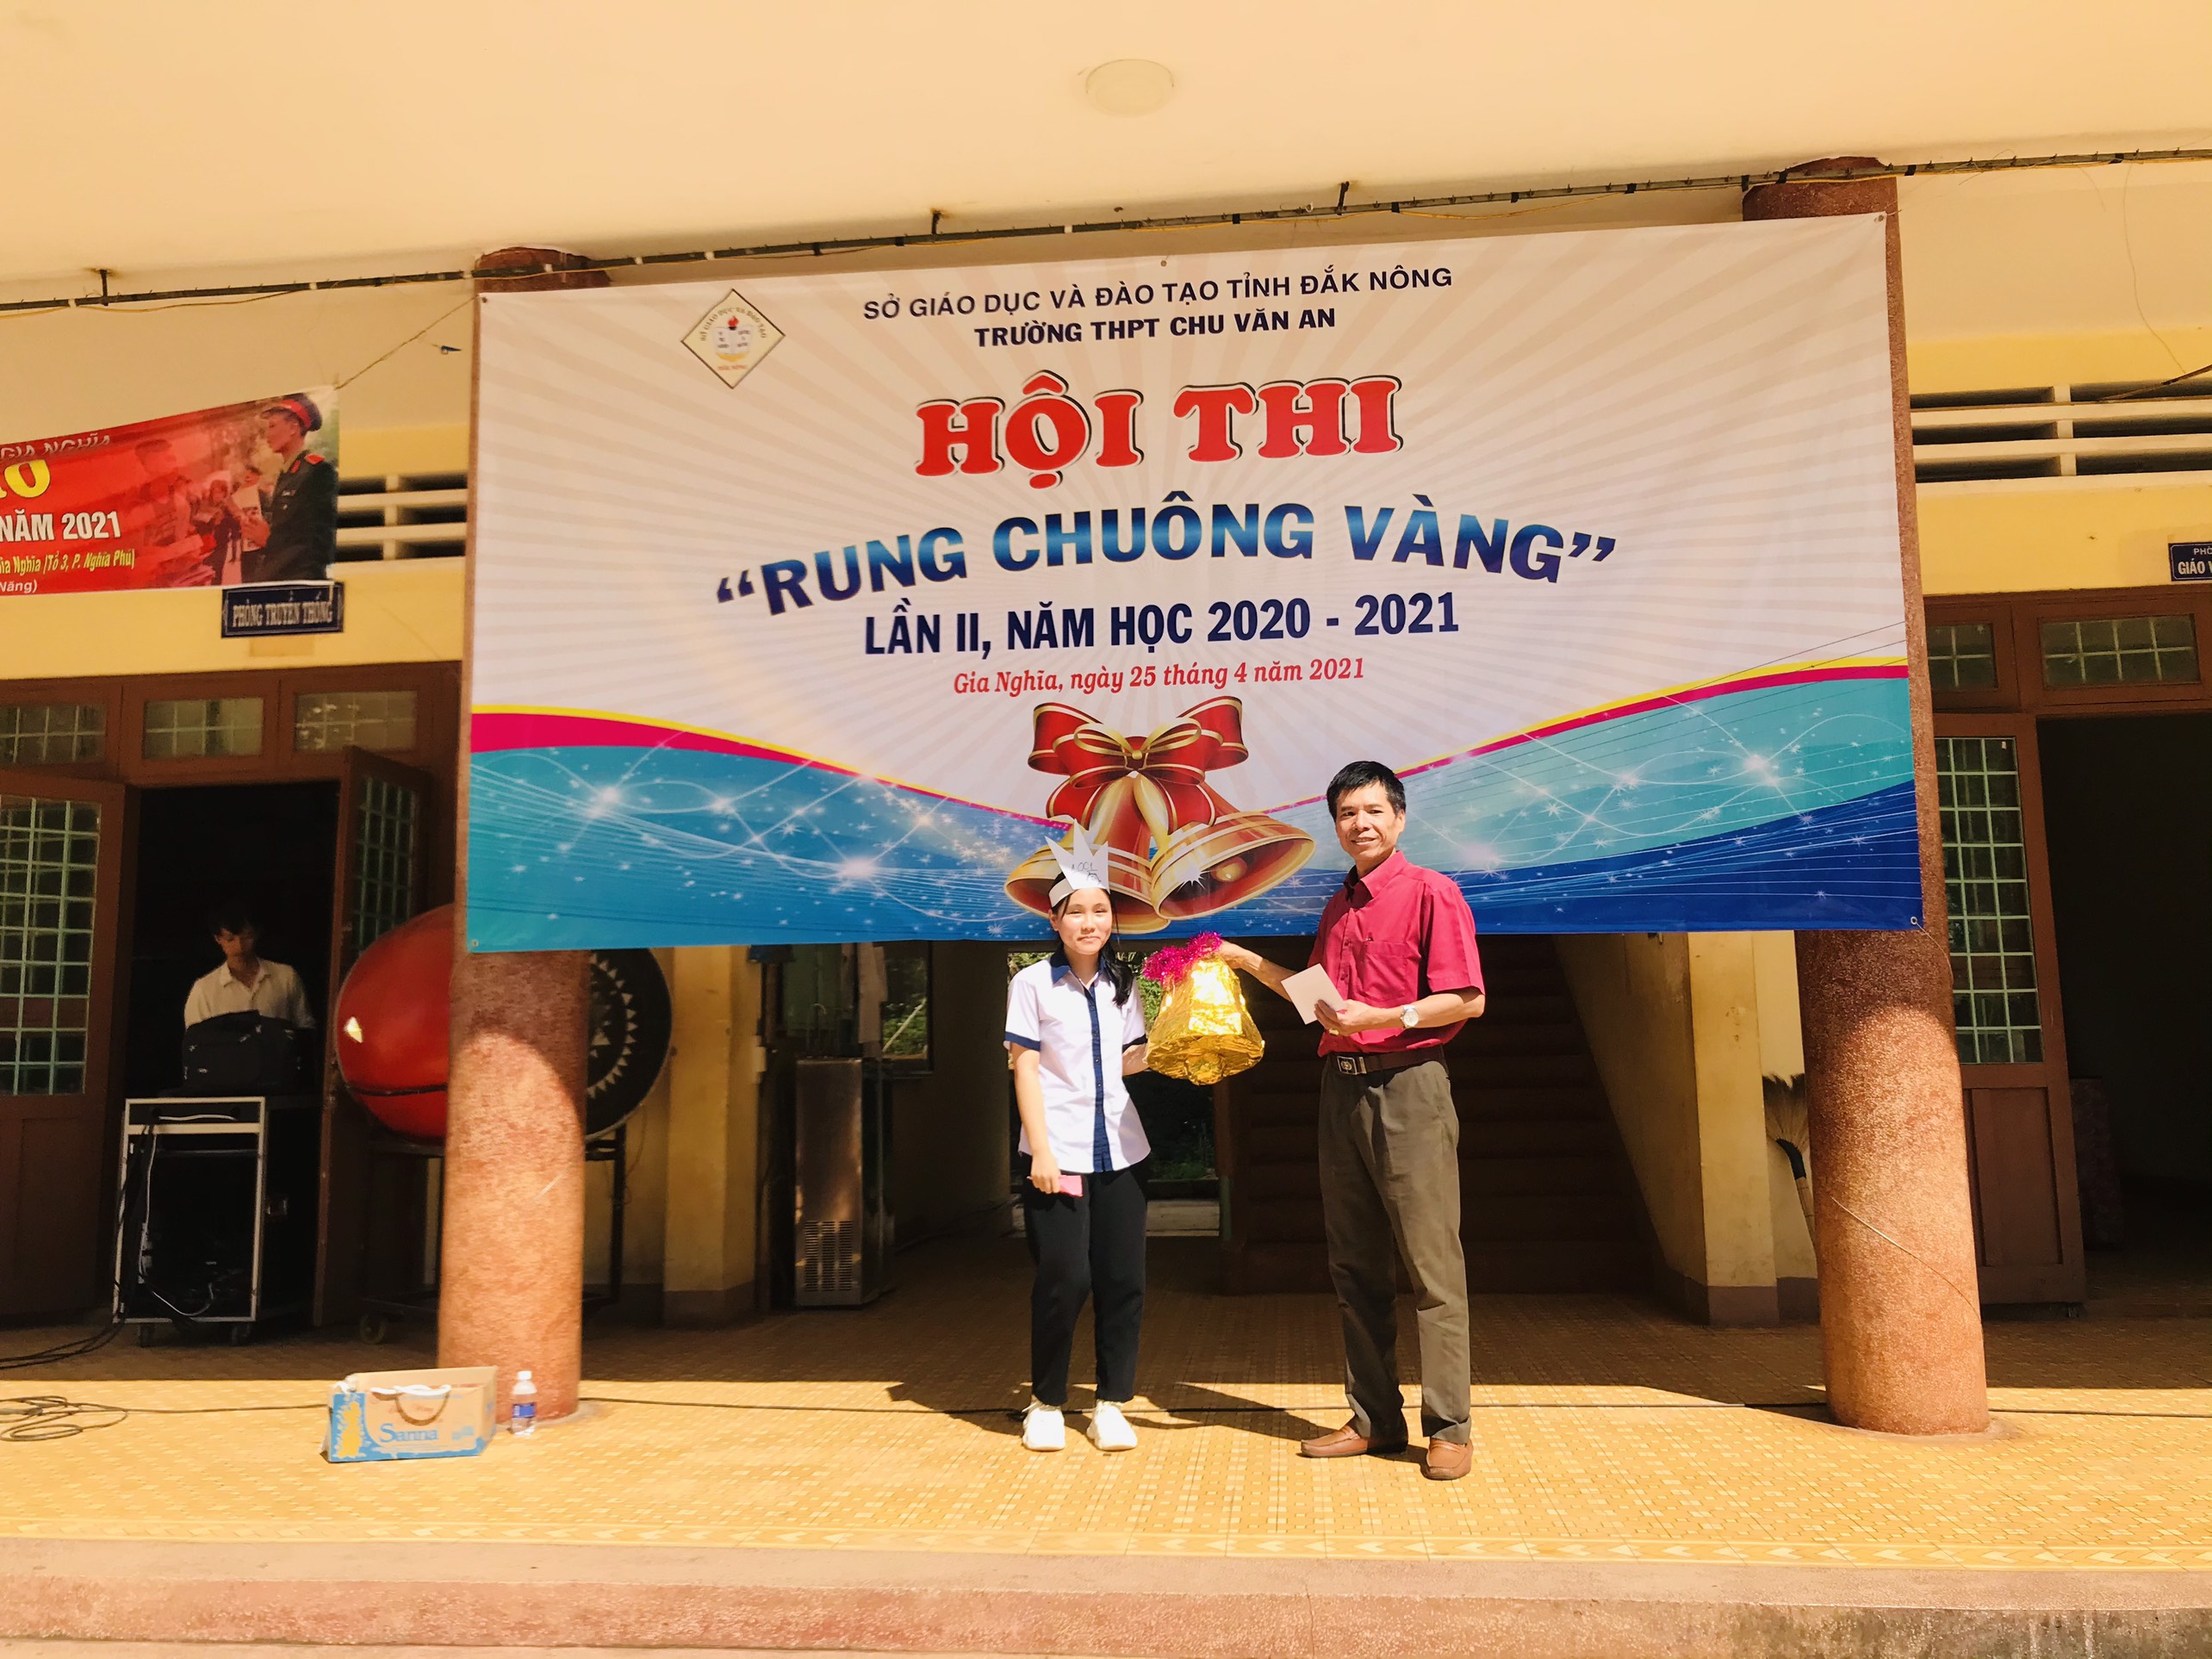 HỘI THI RUNG CHUÔNG VÀNG - Trường THPT Chu Văn An